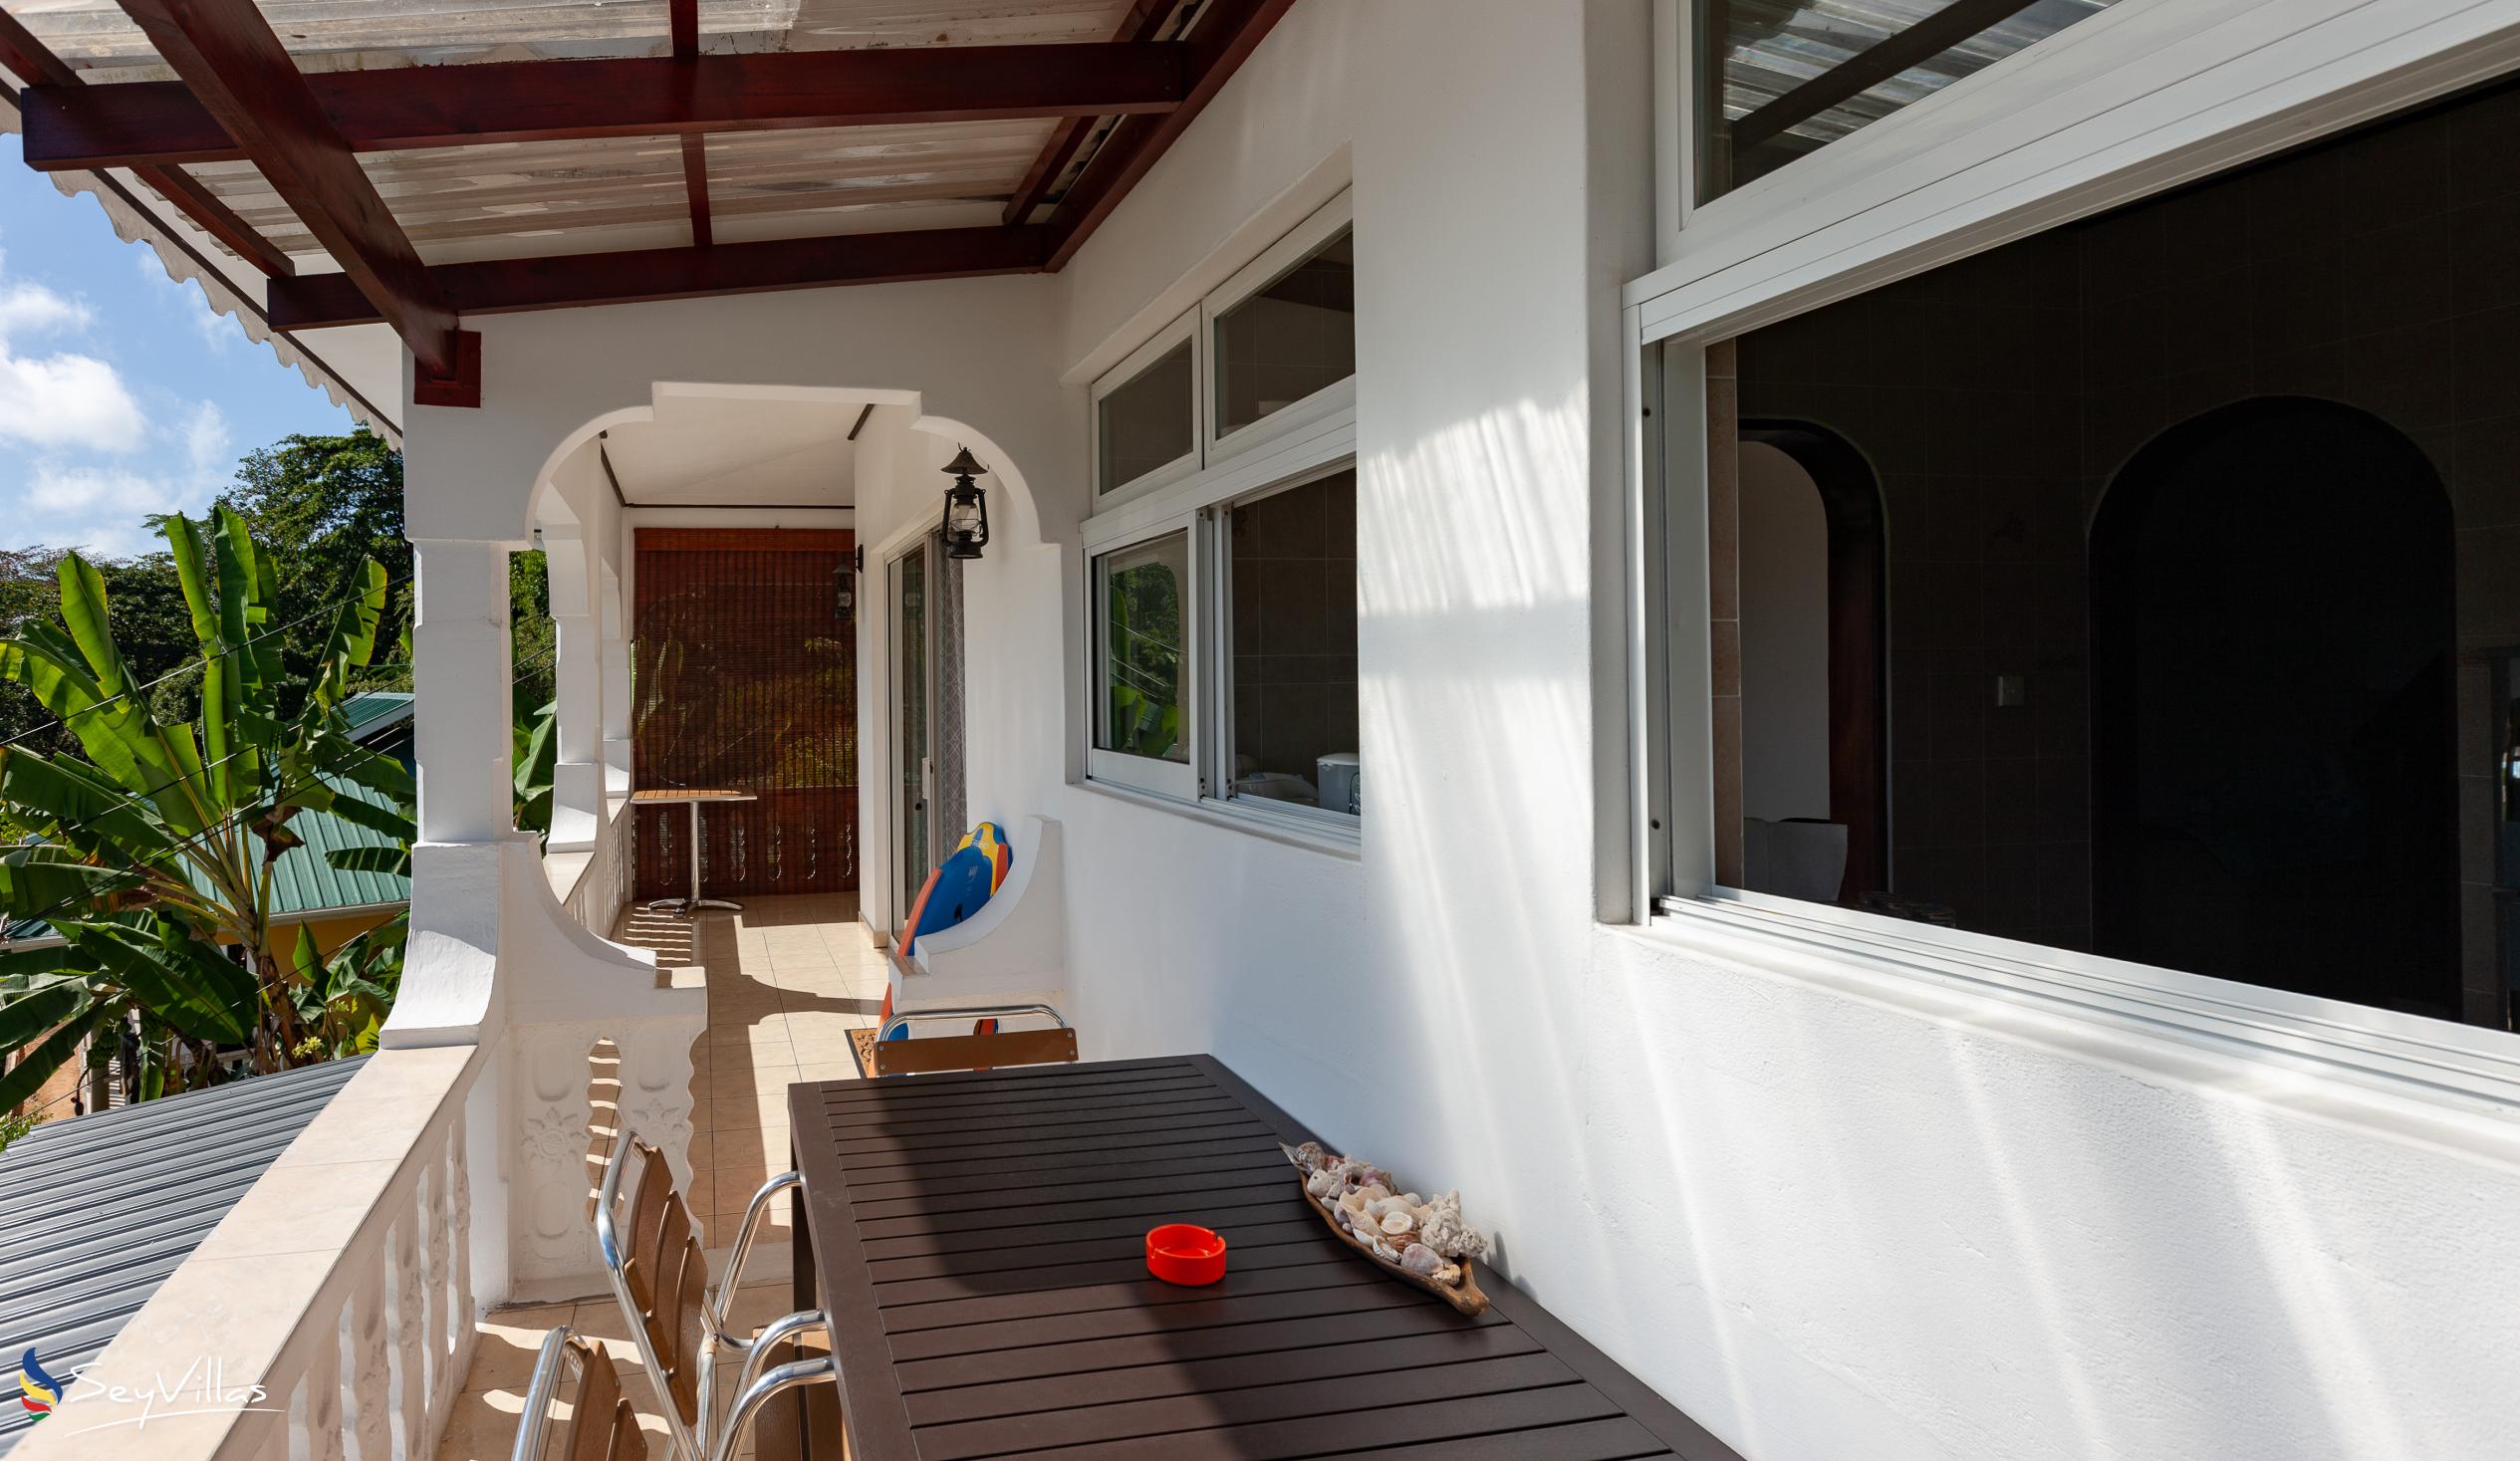 Foto 12: Saria Self Catering - Appartamento con 3 camere - Praslin (Seychelles)